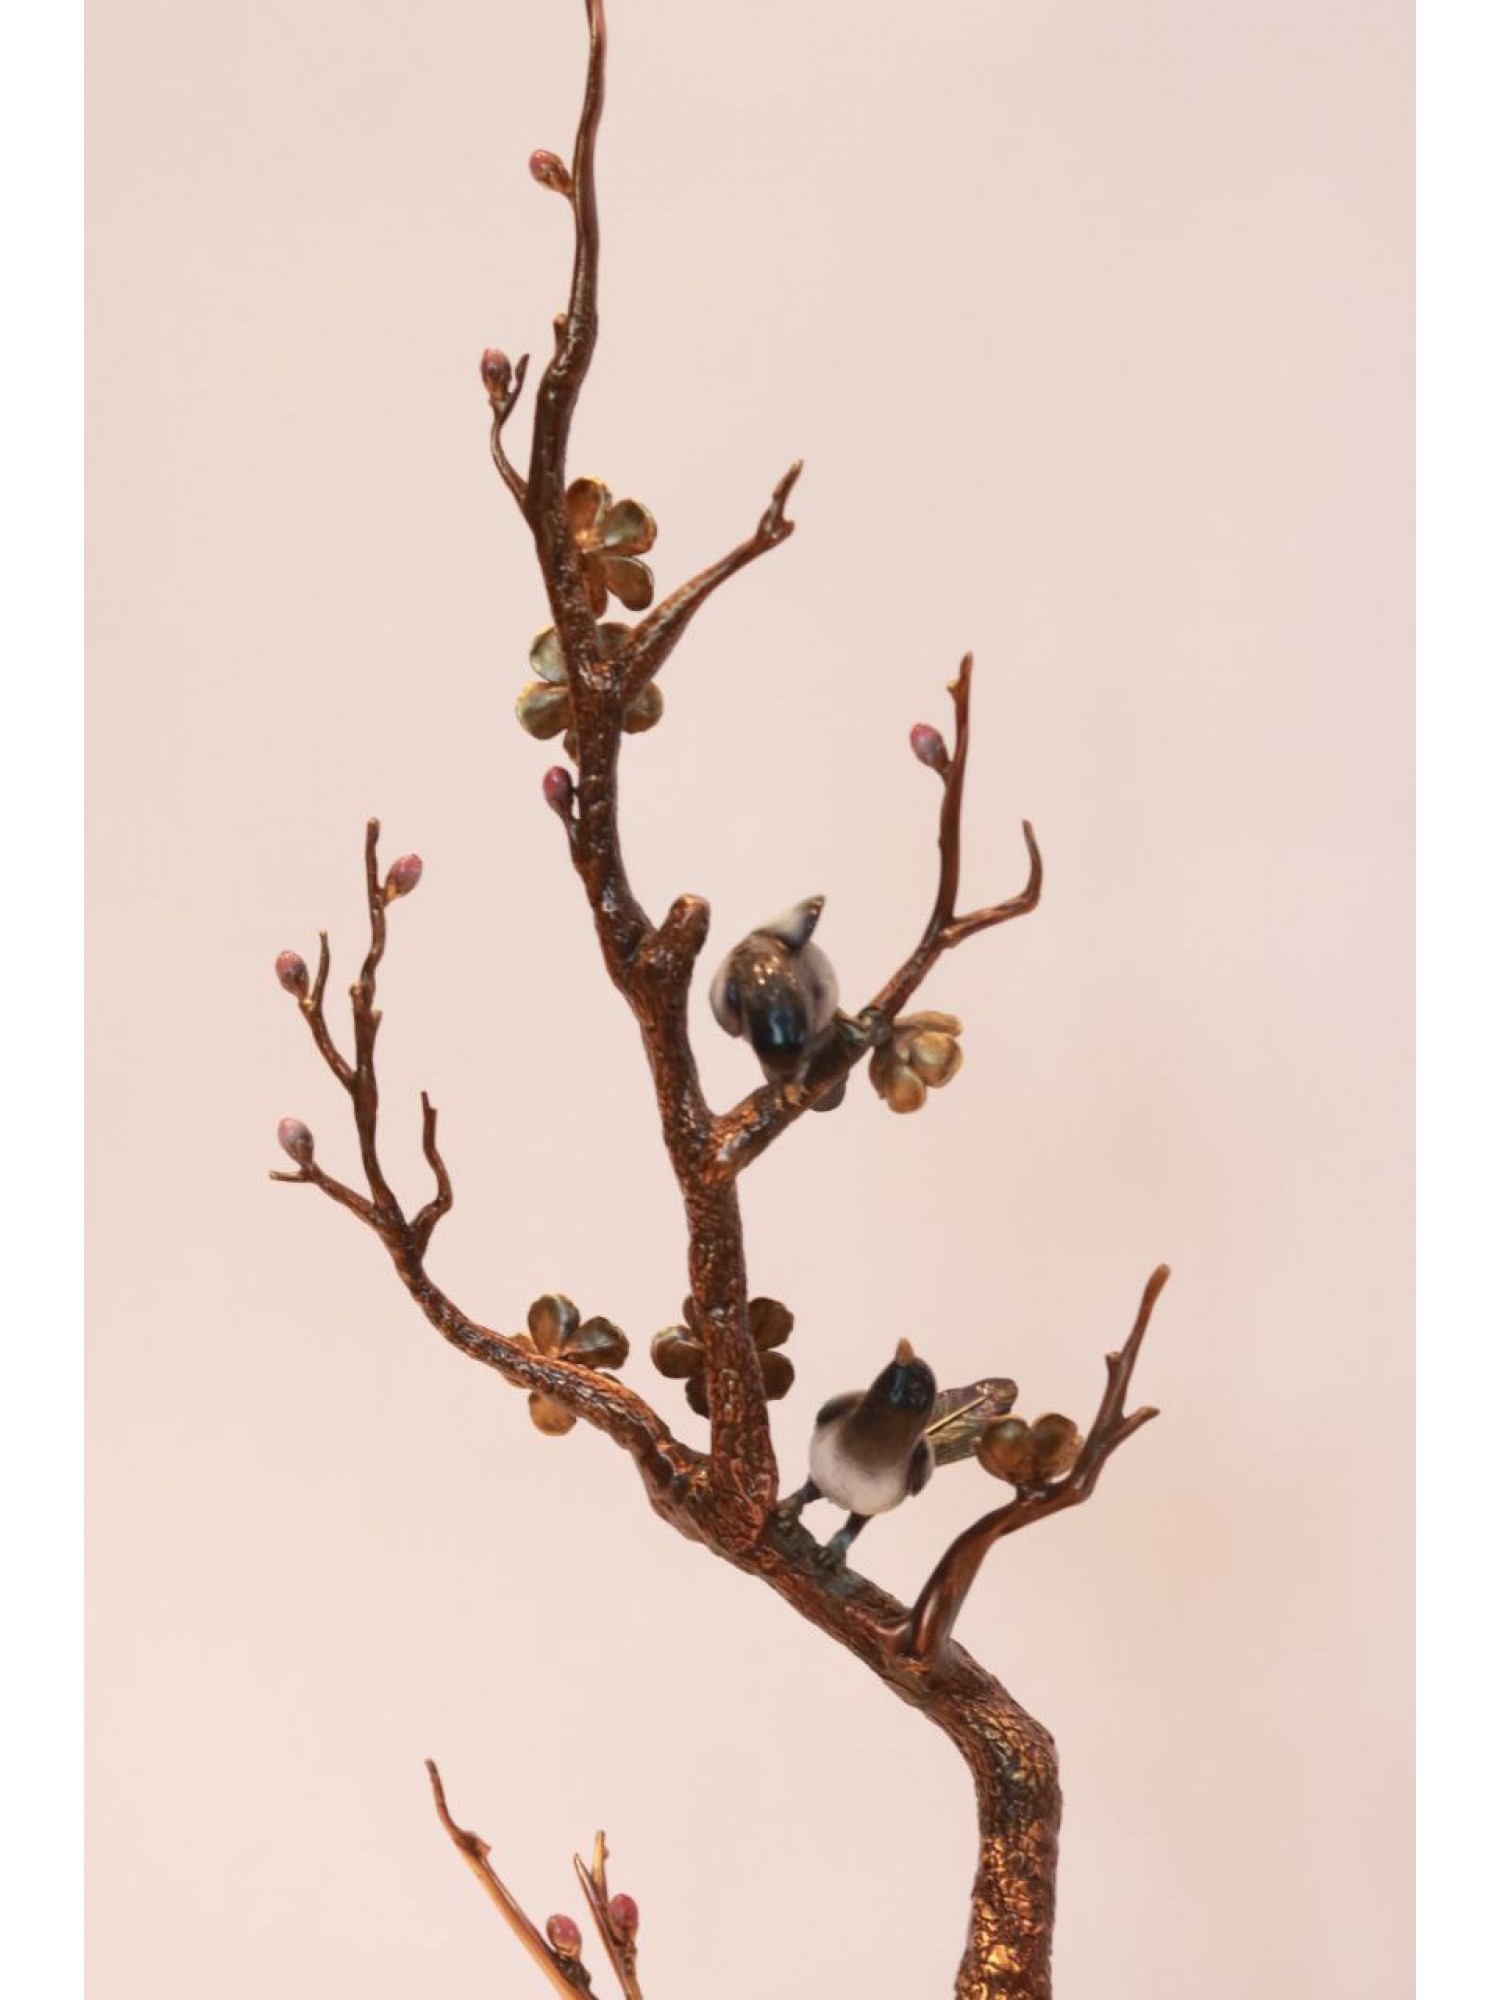 Статуэтка "Дерево с птицами в Вазе" из бронзы (большая) - приток новых возможностей и идей в Вашу жизнь!